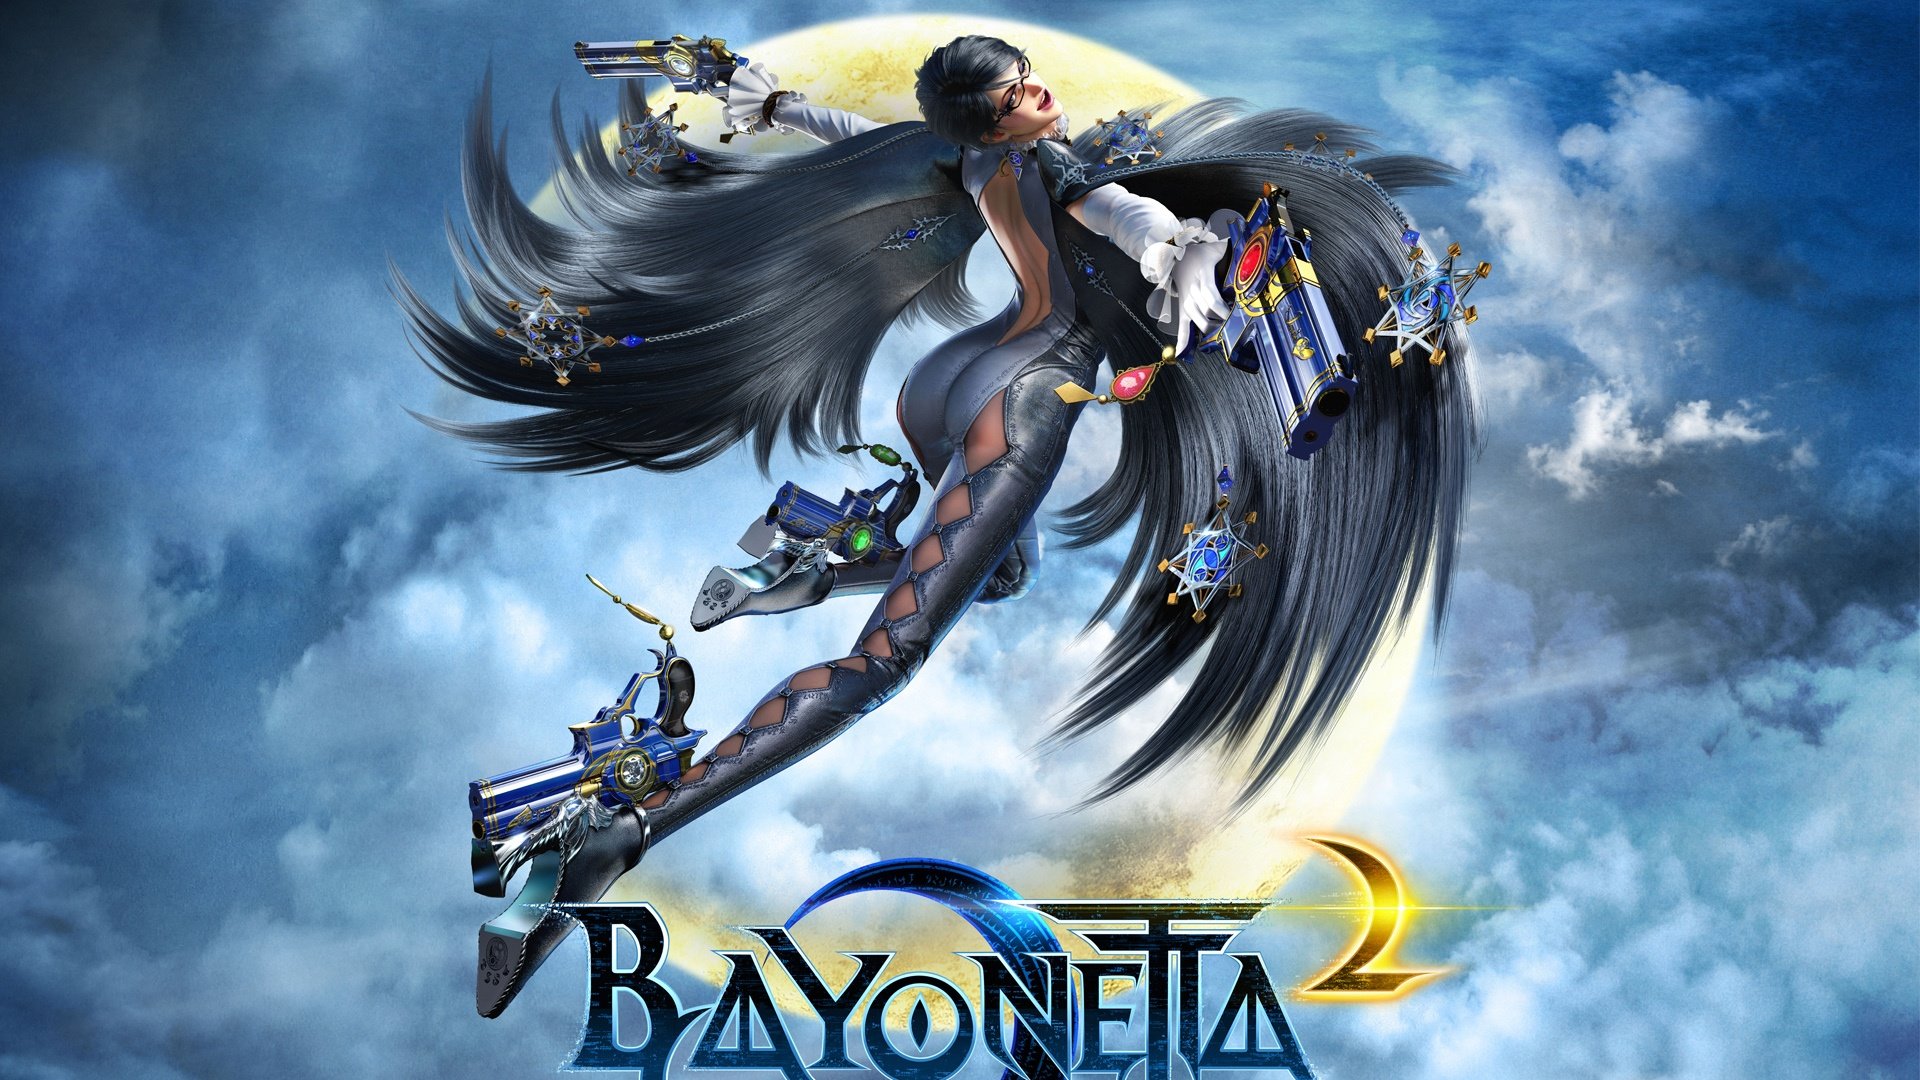 Best Bayonetta 2 wallpaper ID:63318 for High Resolution hd 1080p desktop